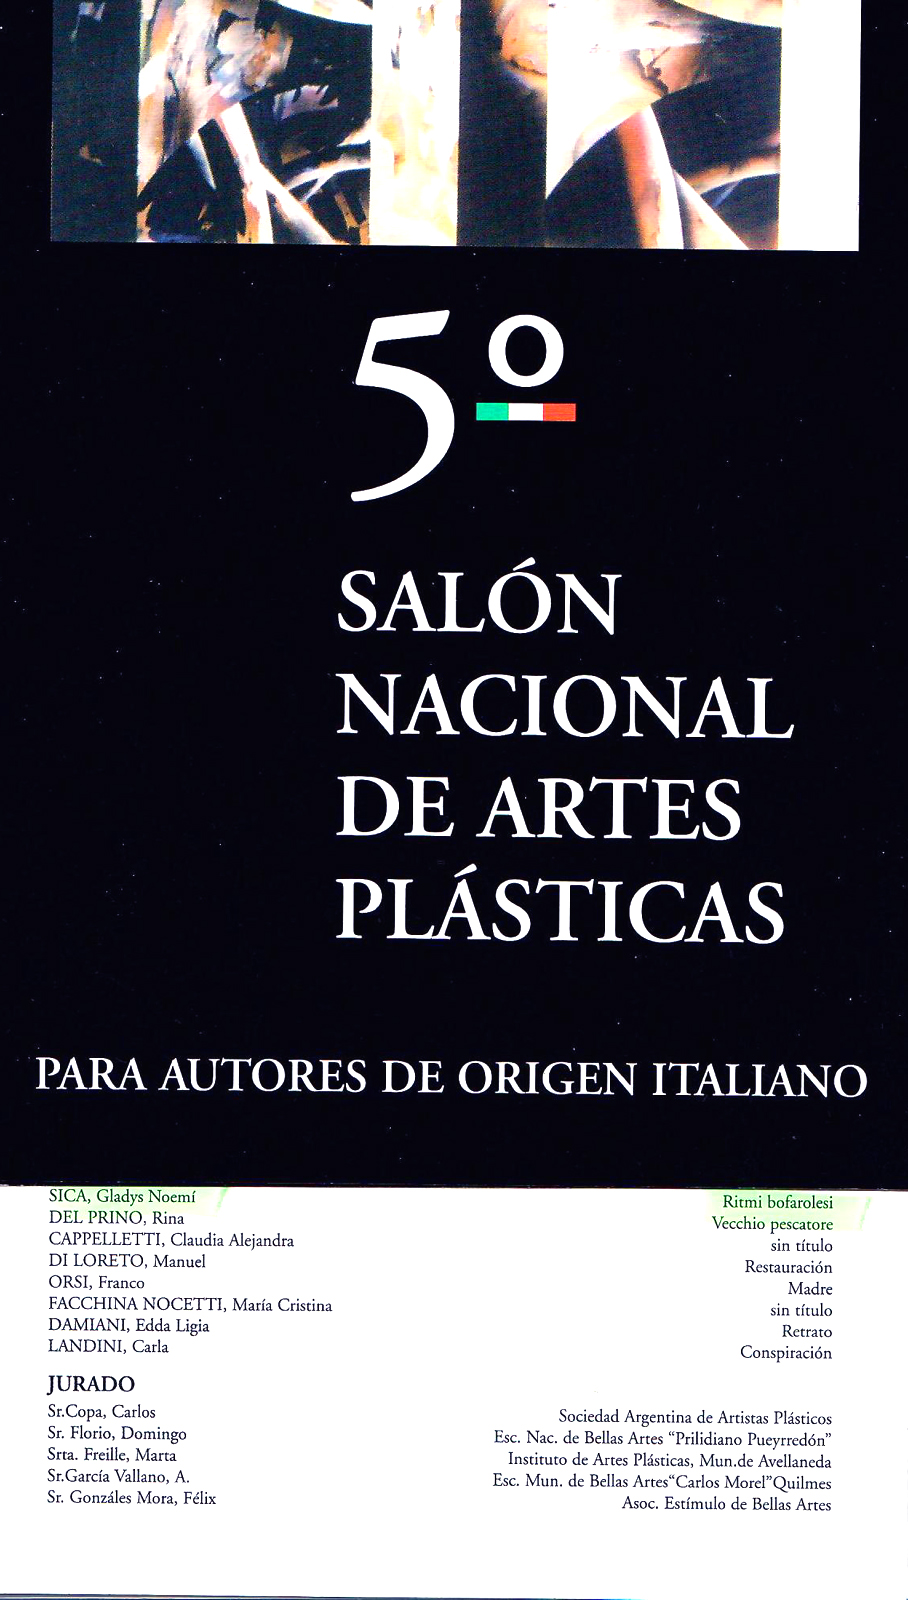 1997 - Collettiva, 5° Salone Nazionale d'Arte per autori di origine italiana, Centro Argentino-Friuliano, Buenos Aires